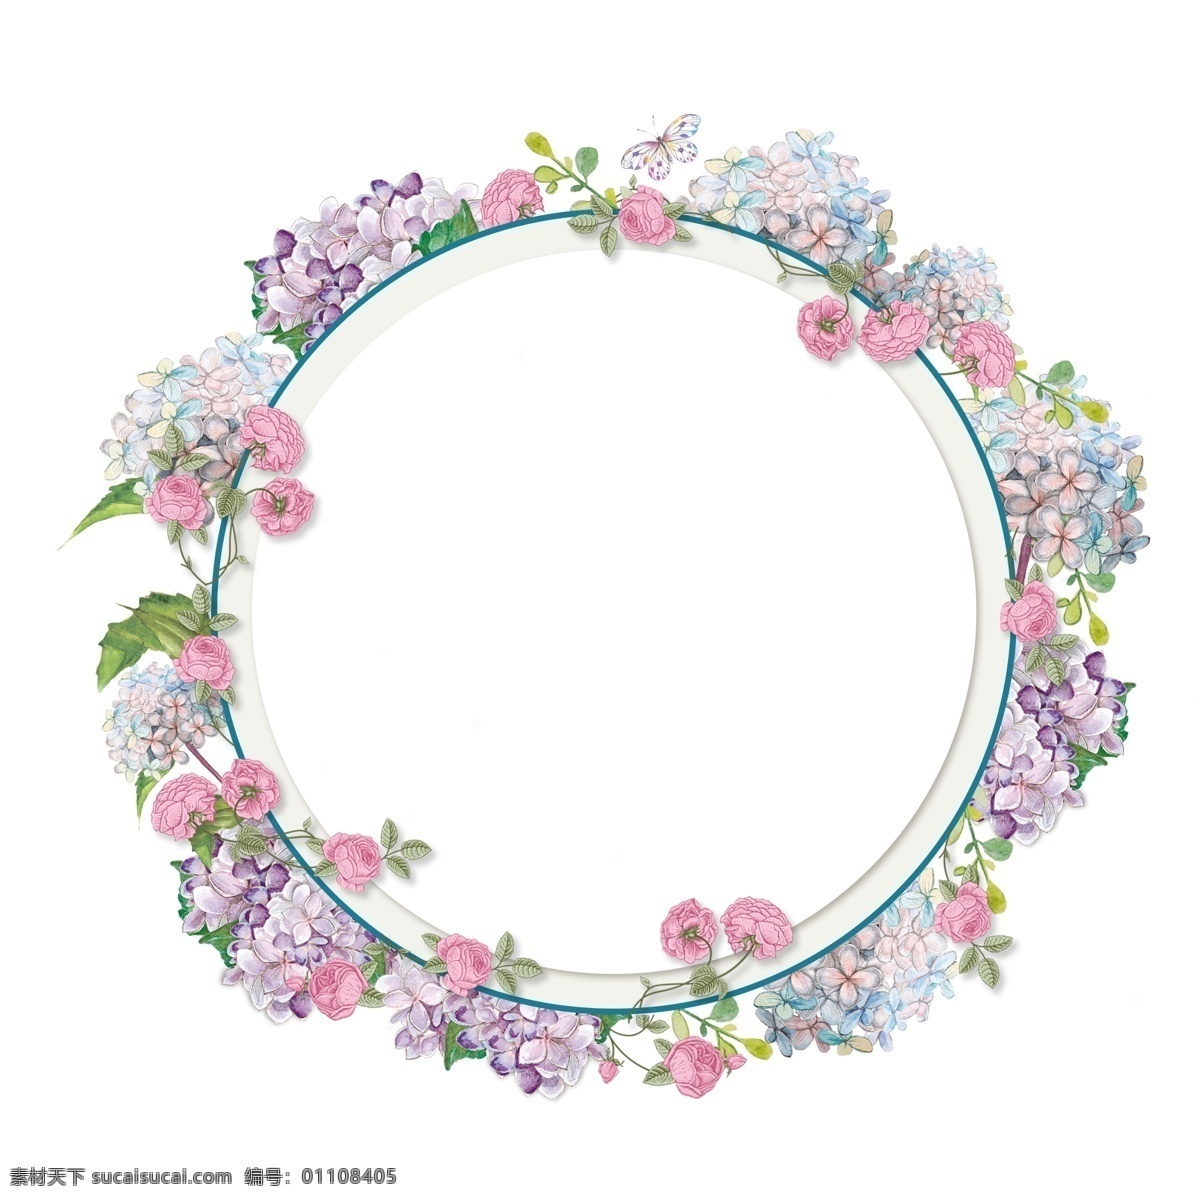 圆形 手绘 浪漫 花卉 边框 清新 唯美 玫瑰 绣球花 植物